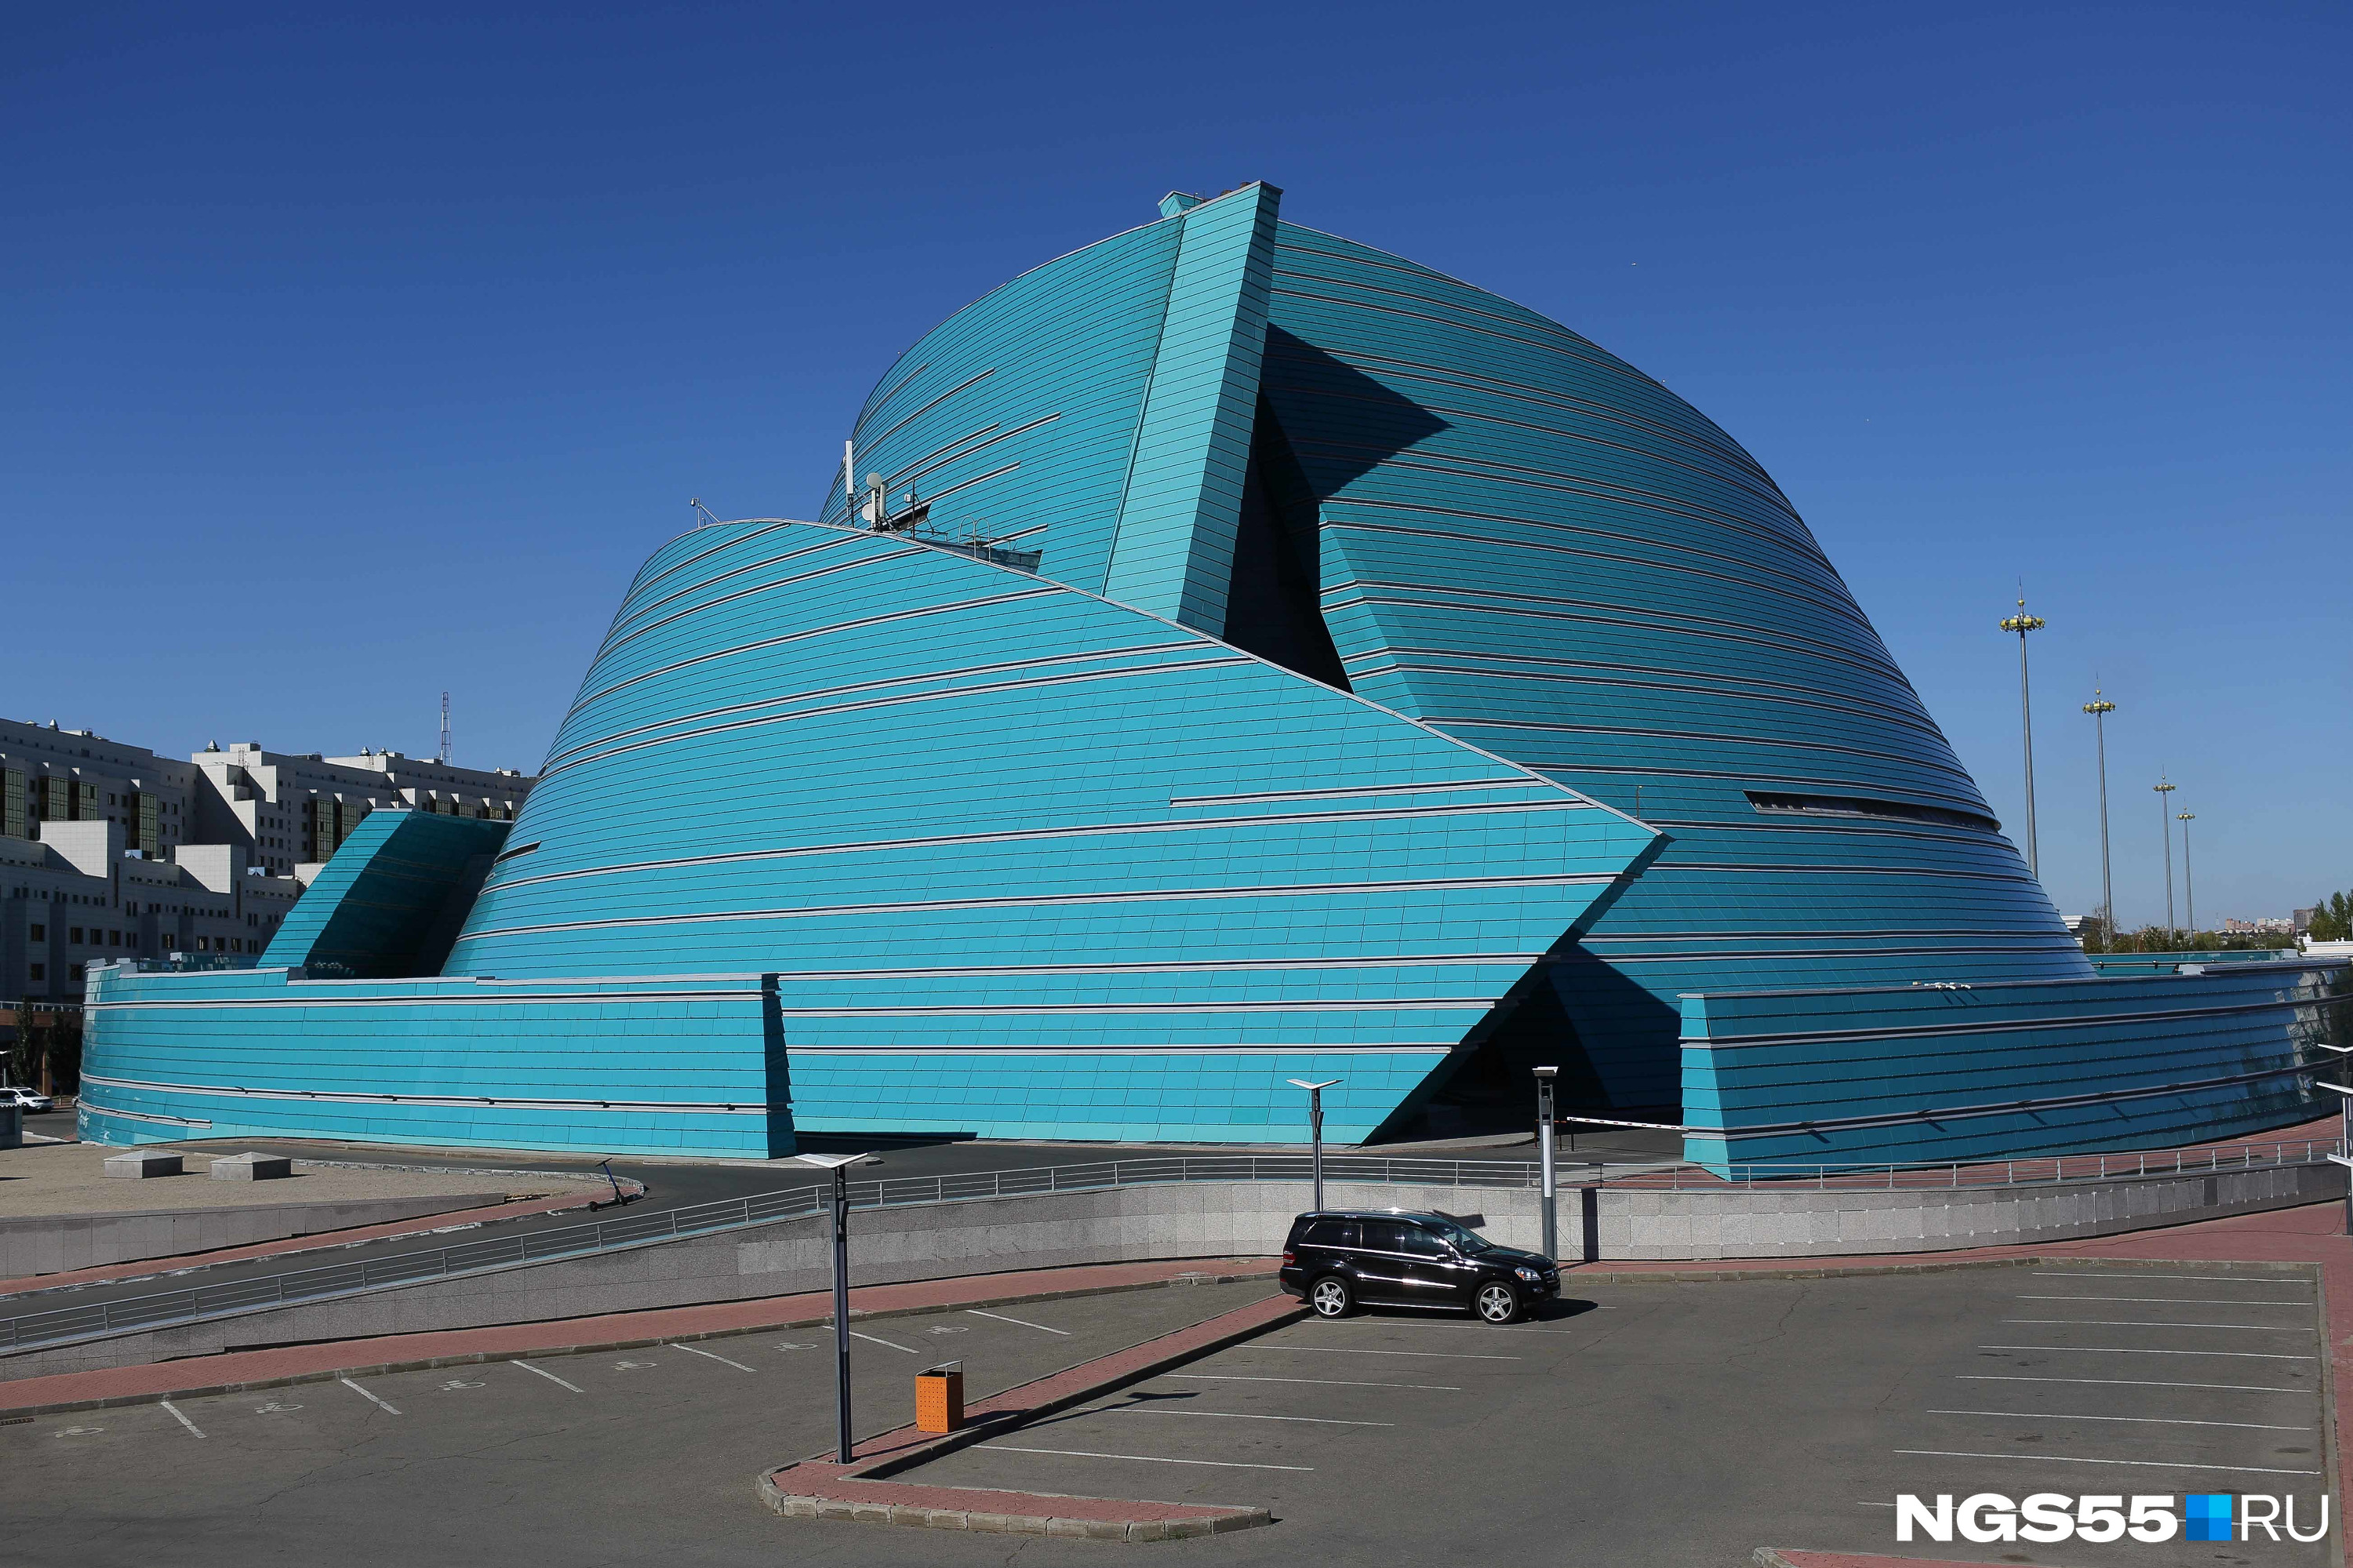 Необычное здание оказалось центральным концертным залом «Казахстан» на территории правительственного квартала. Здание одновременно напоминает и казахскую юрту, и морской парусник